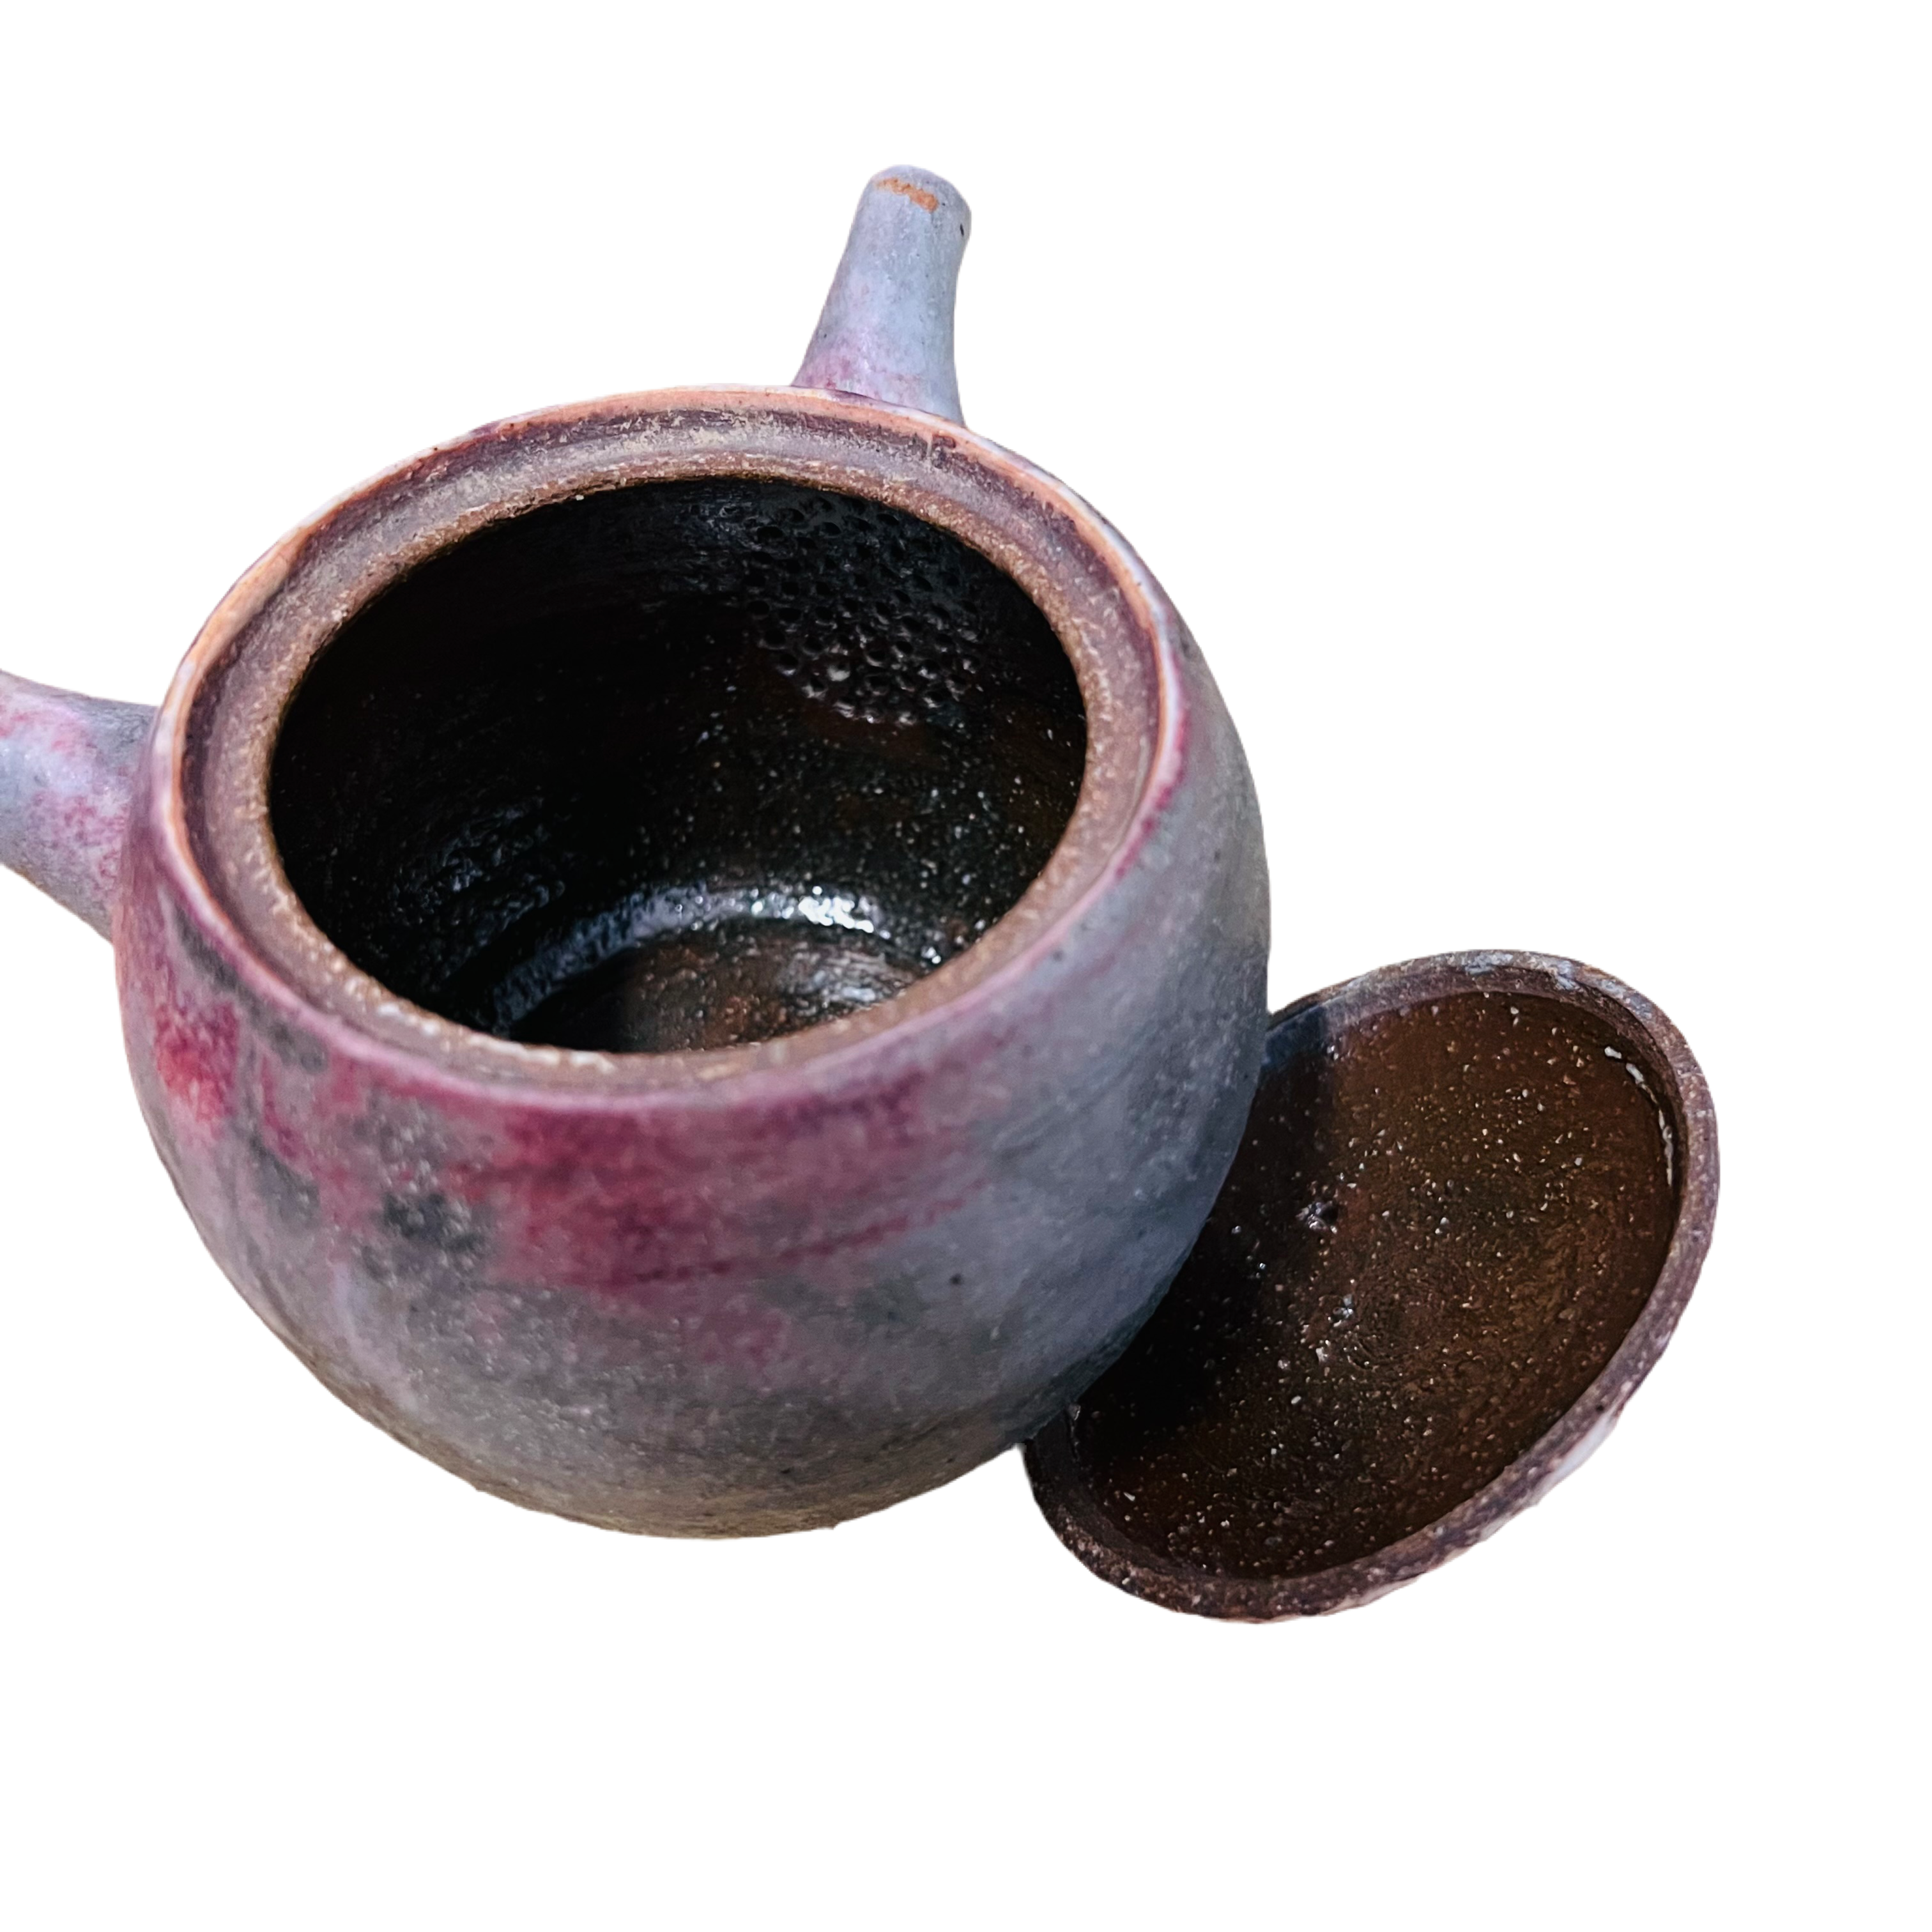 Japanese Handmade Kyusu Teapot -Lavender Garden